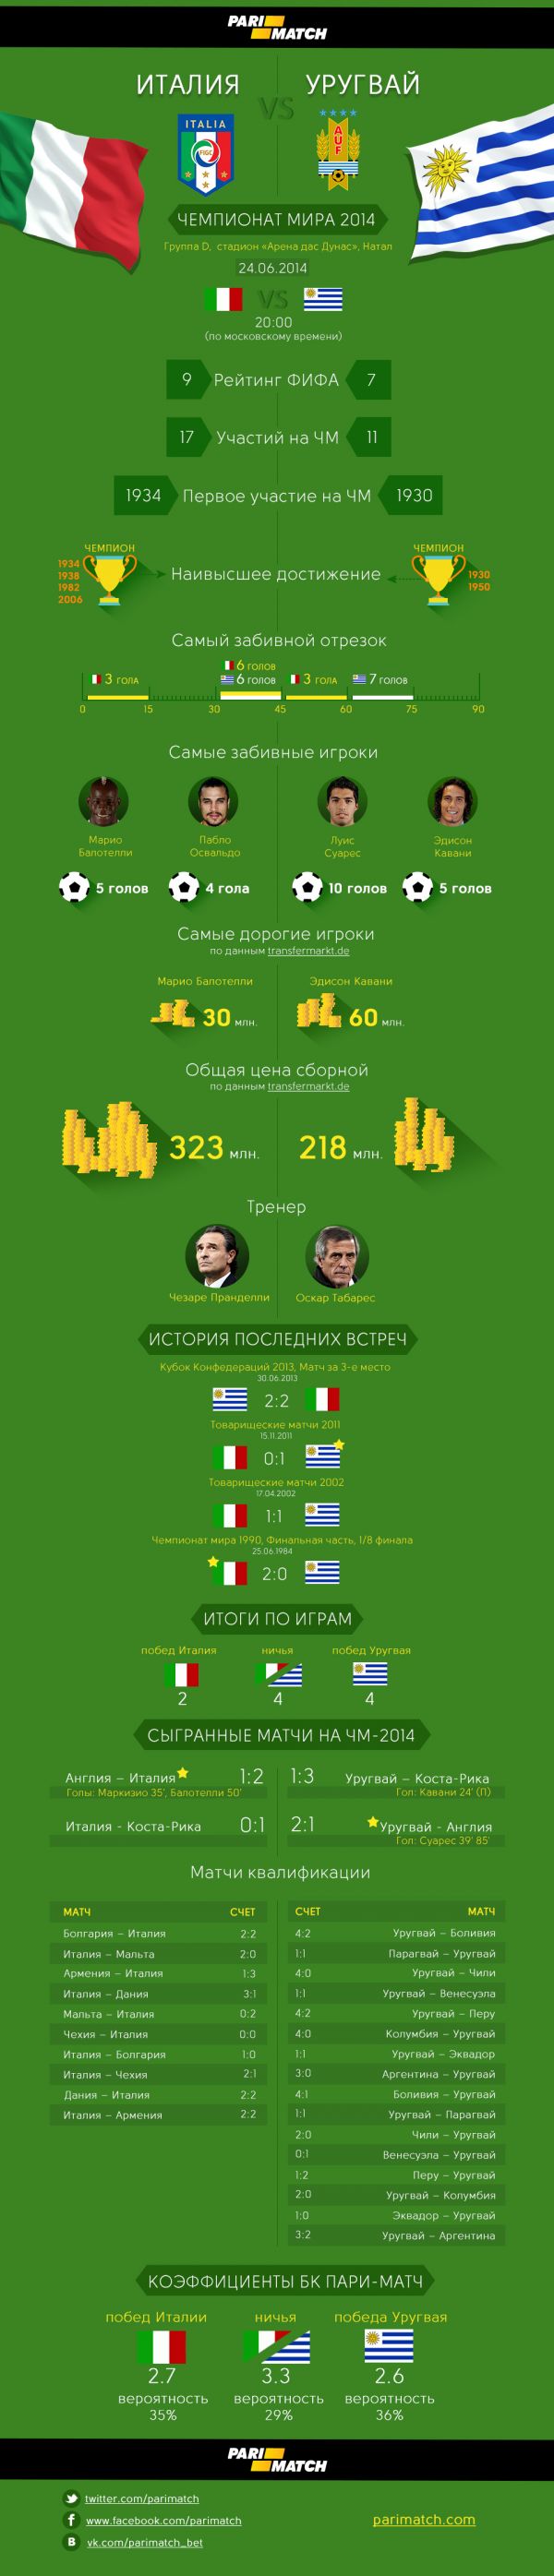 infographic_italiya_yrygvai.jpg